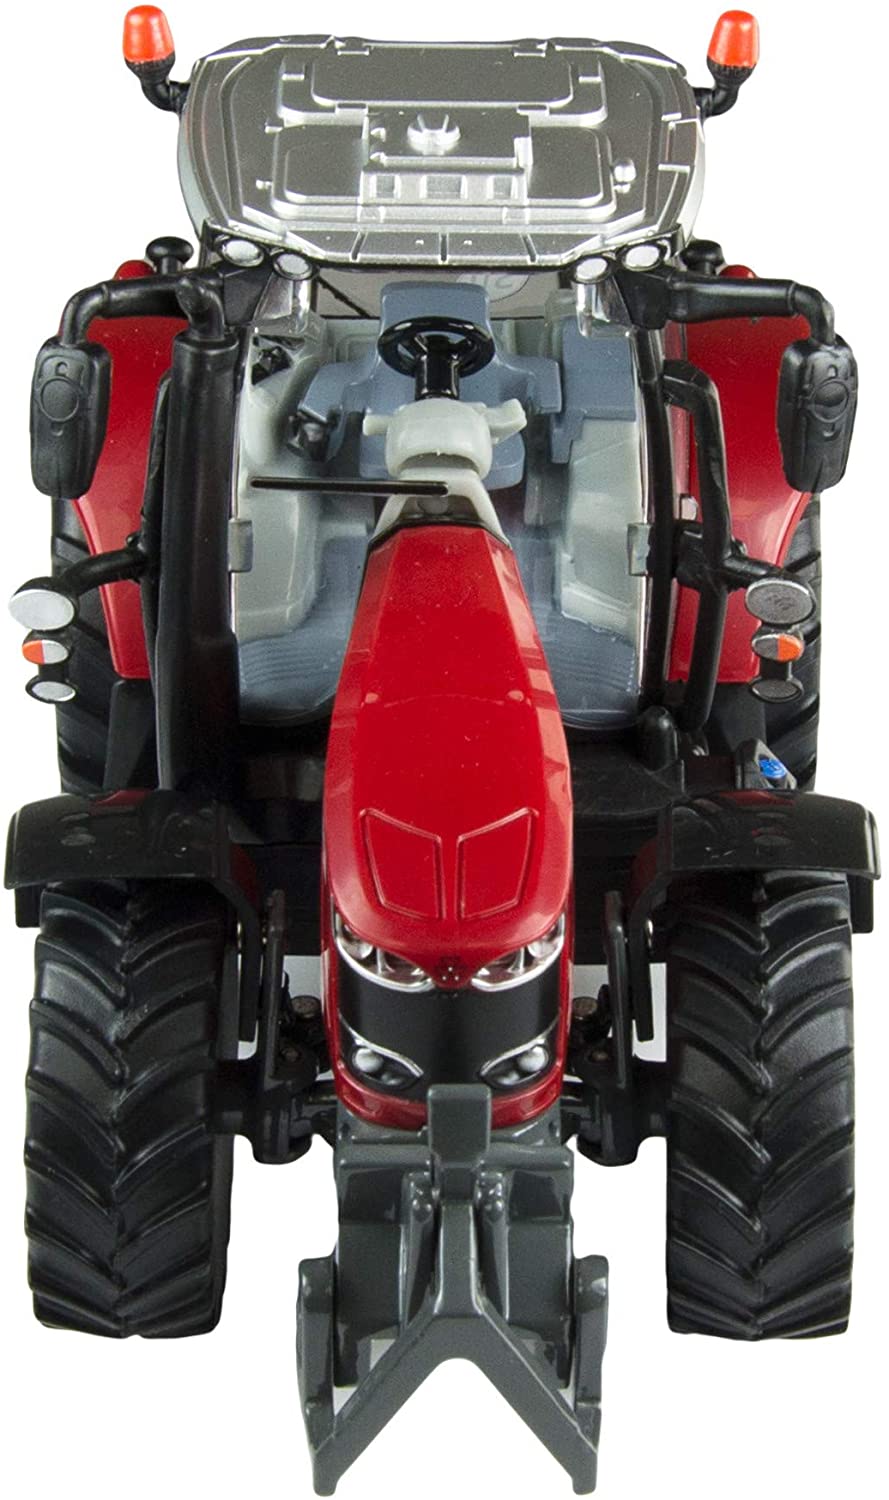 Britains 1:32 Massey Ferguson 6718 S Tractor Toy, juguete de colección de granja